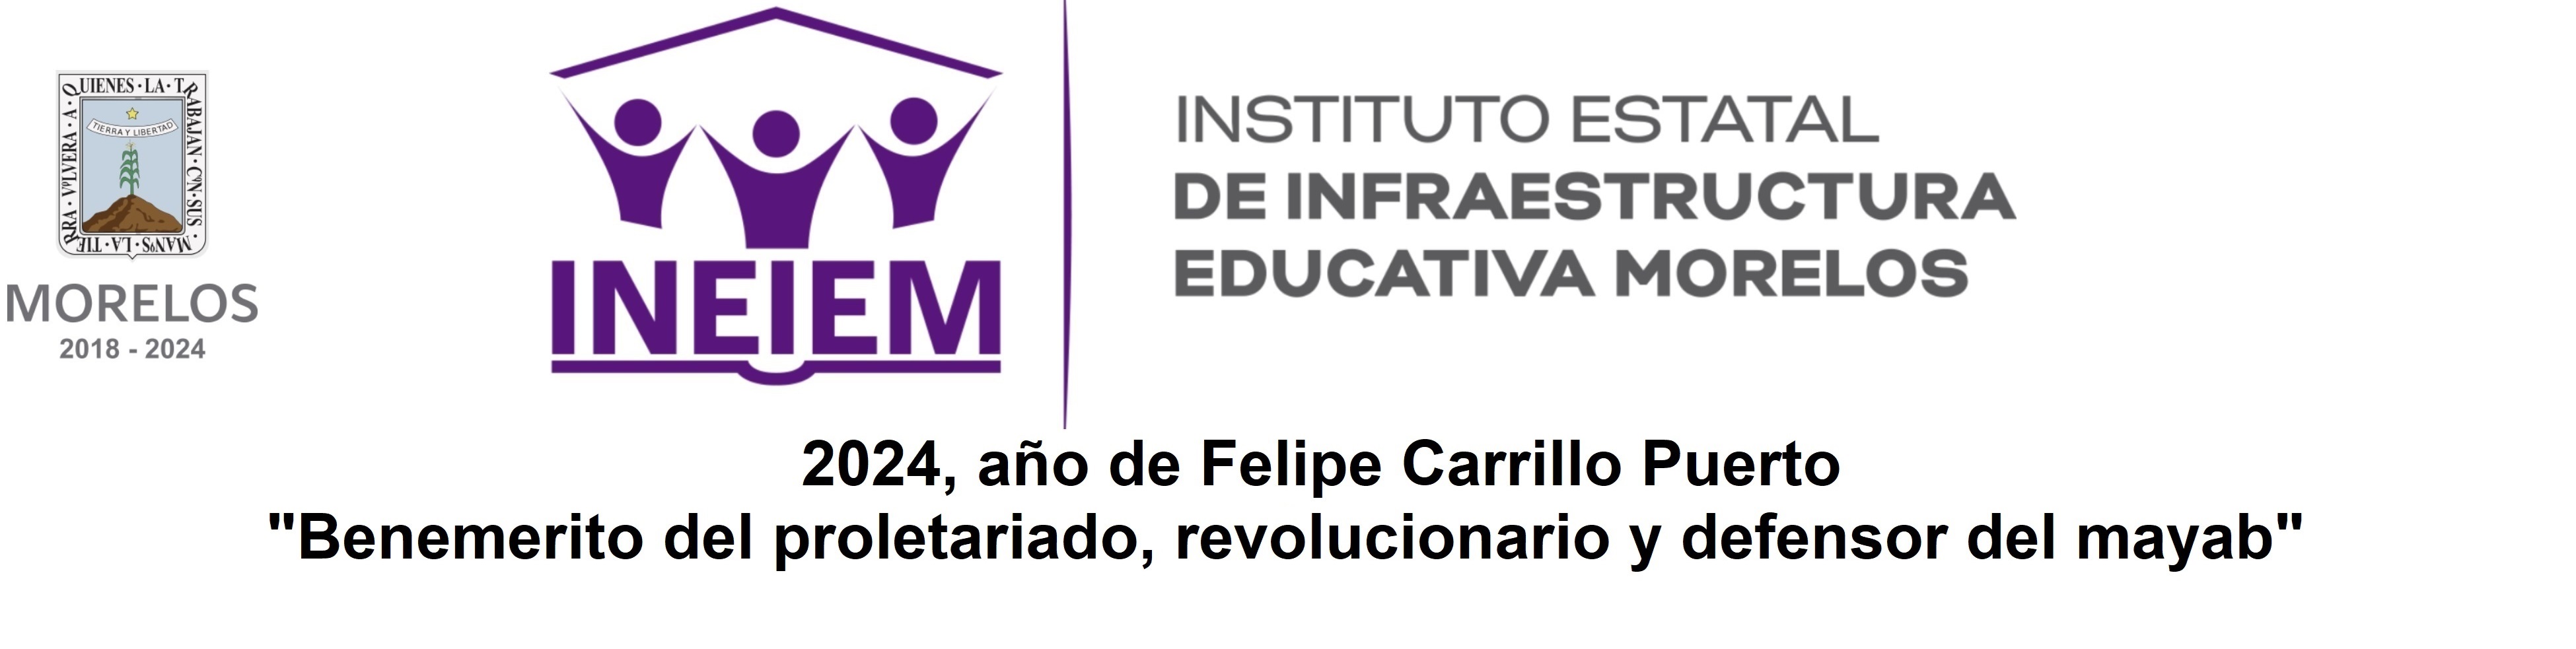 Instituto Estatal de Infraestructura Educativa Morelos (INEIEM)